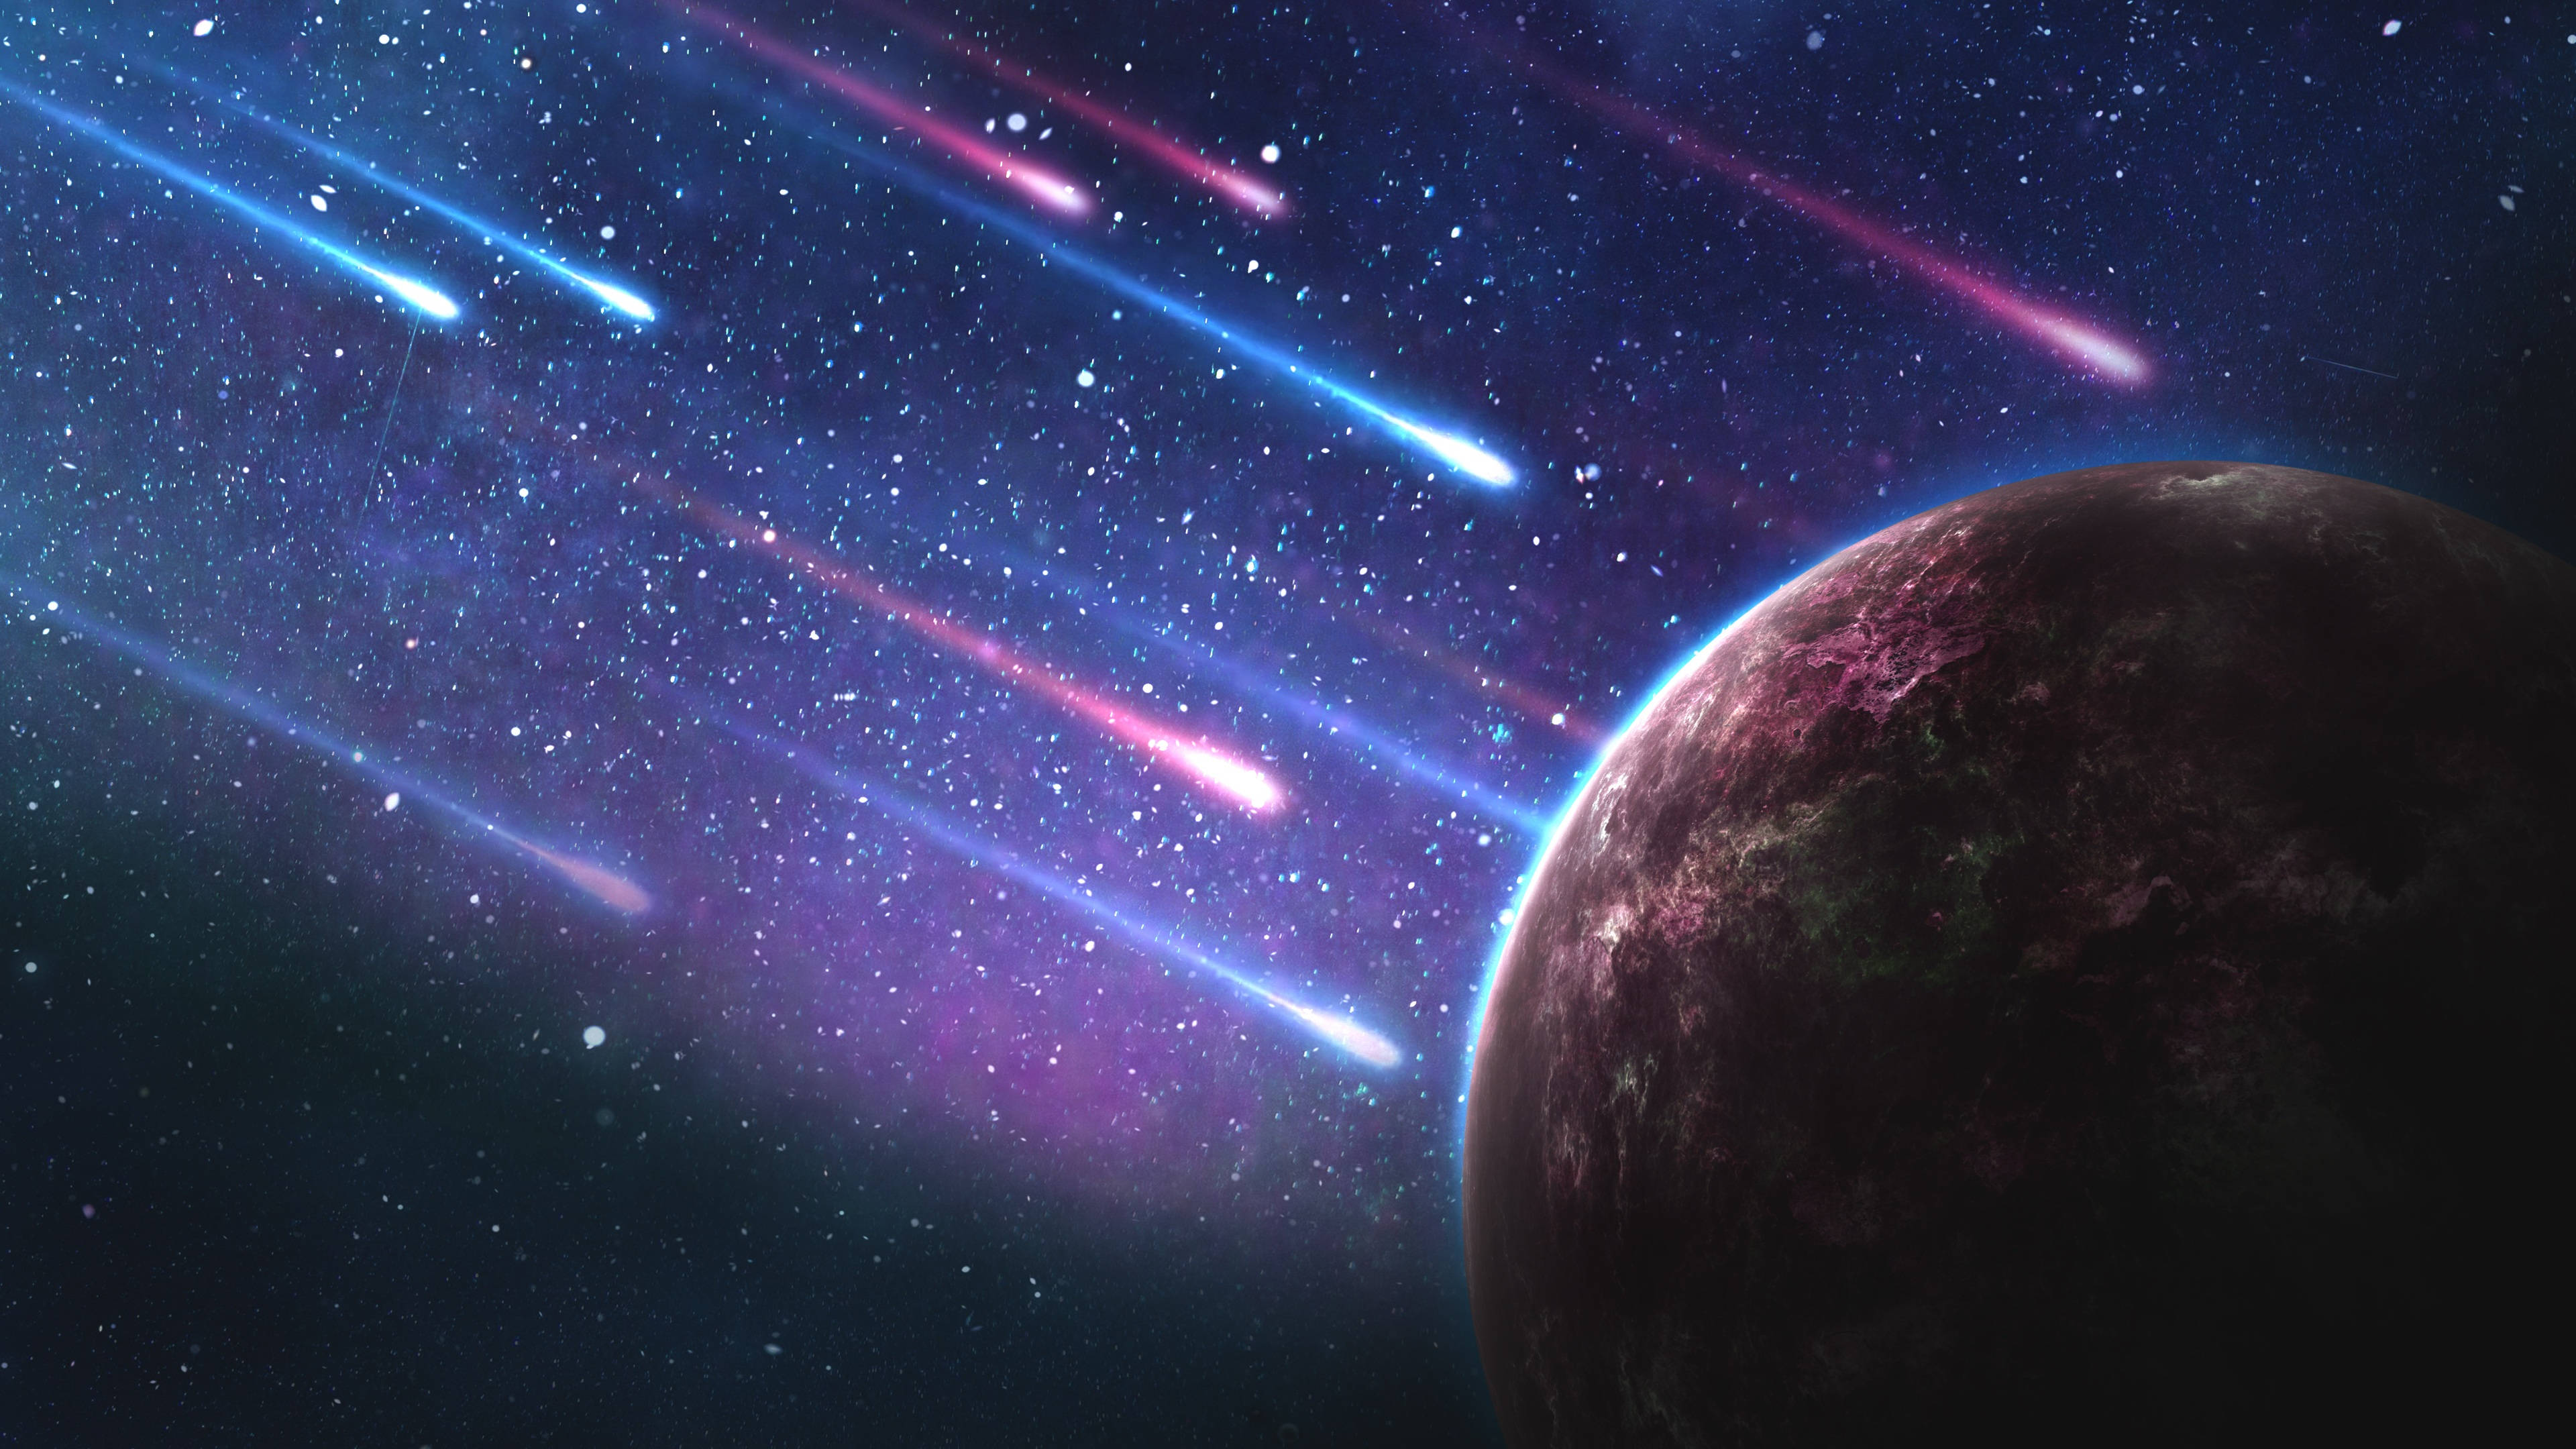 Meteoriten,asteroiden Und Ein Planet In Einer Farbenfrohen Galaxie Wallpaper